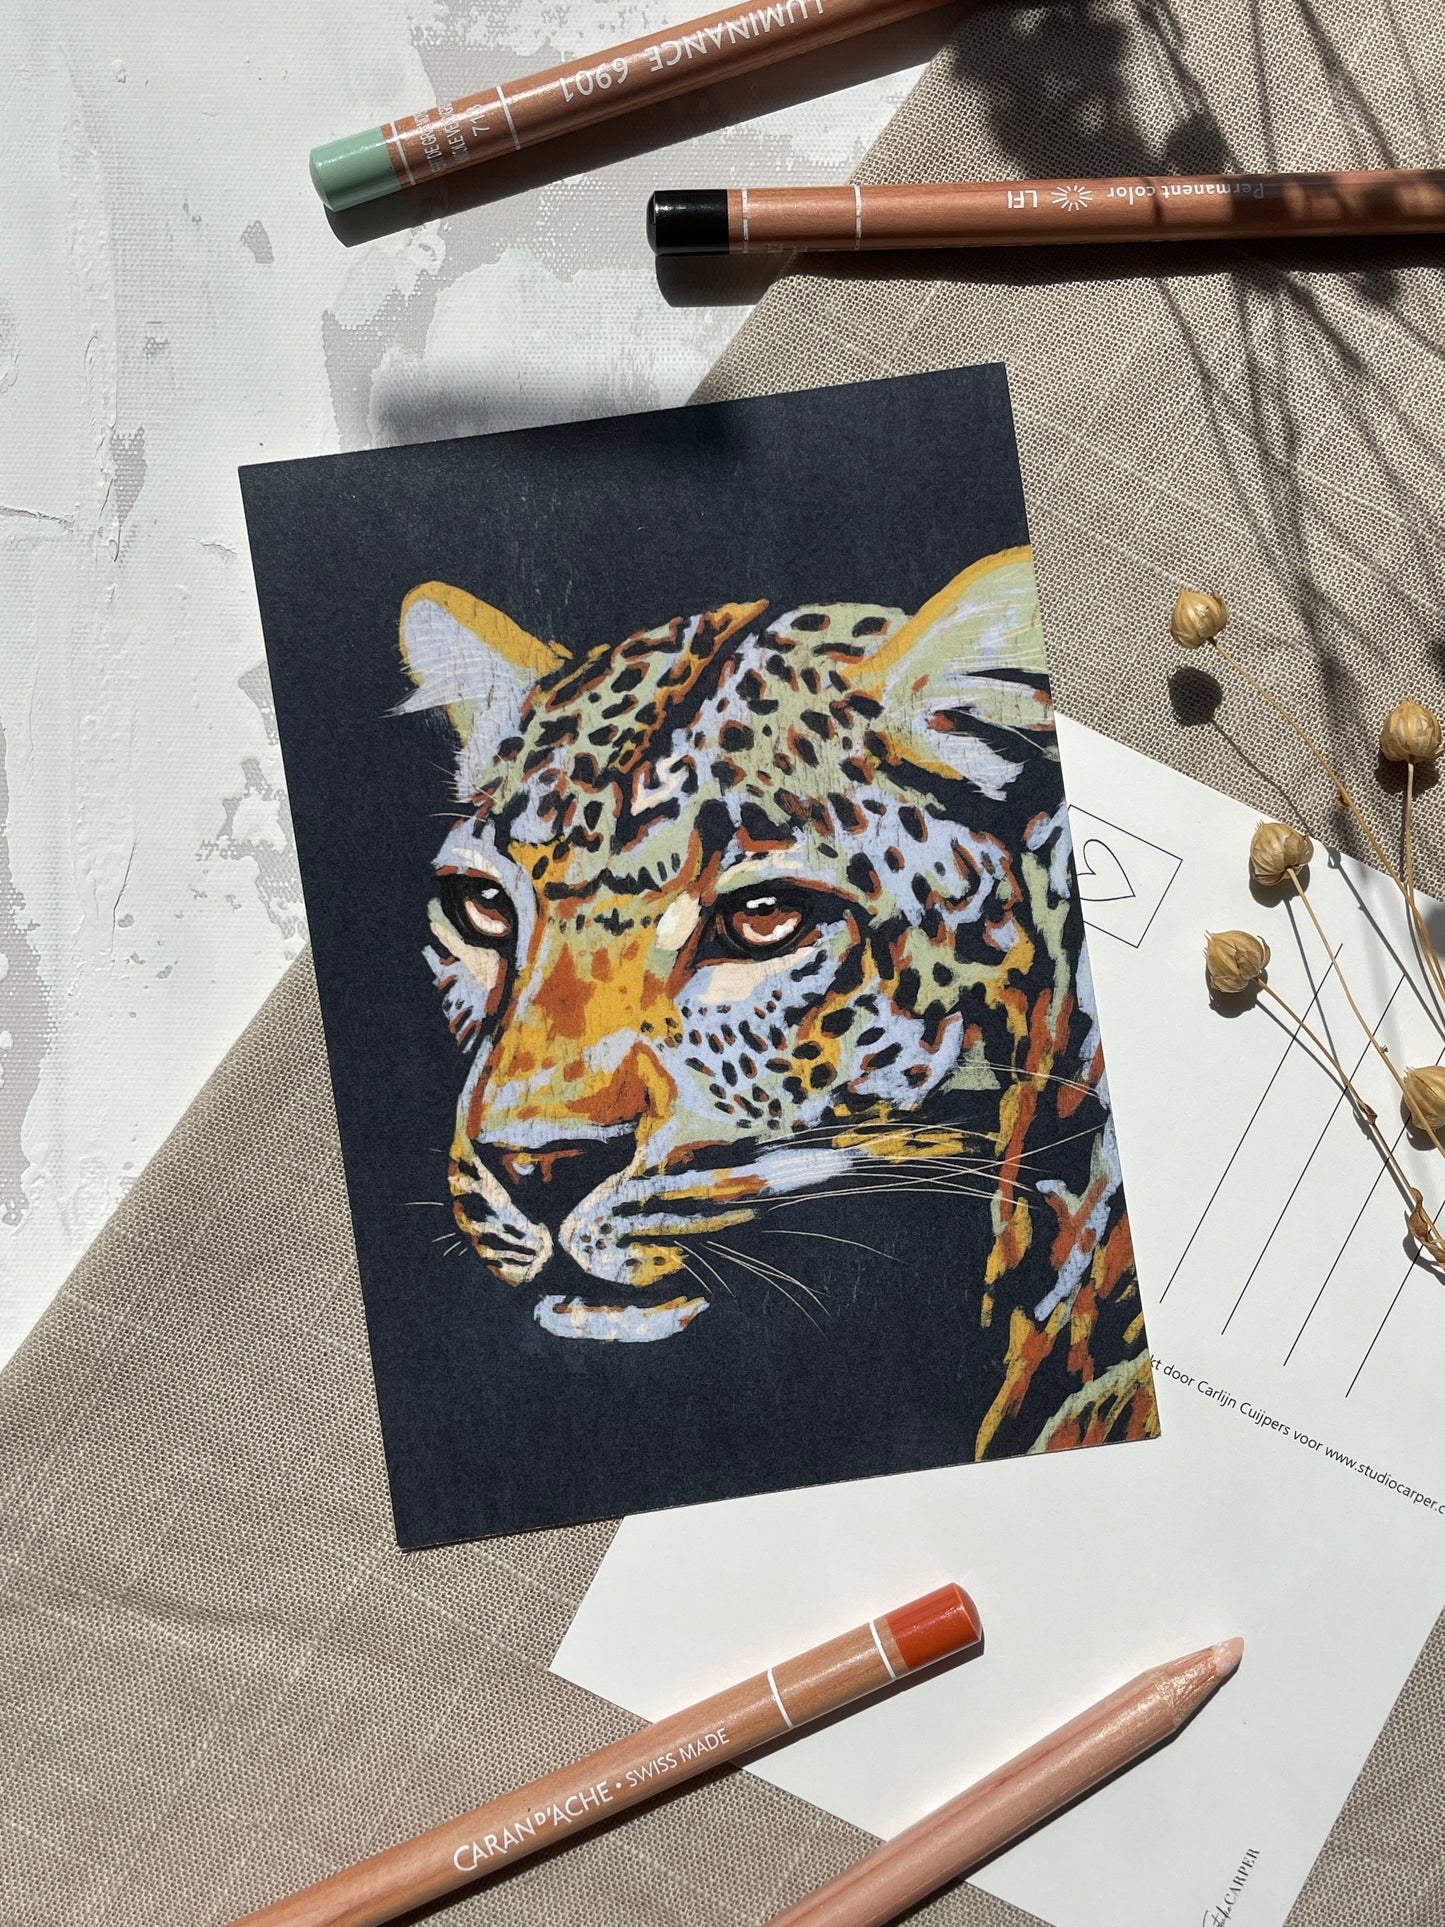 Ansichtkaart met kleurrijke luipaard. Set van 6 ansichtkaarten uit de Wild Africa kunst collectie van Studio Carper. 